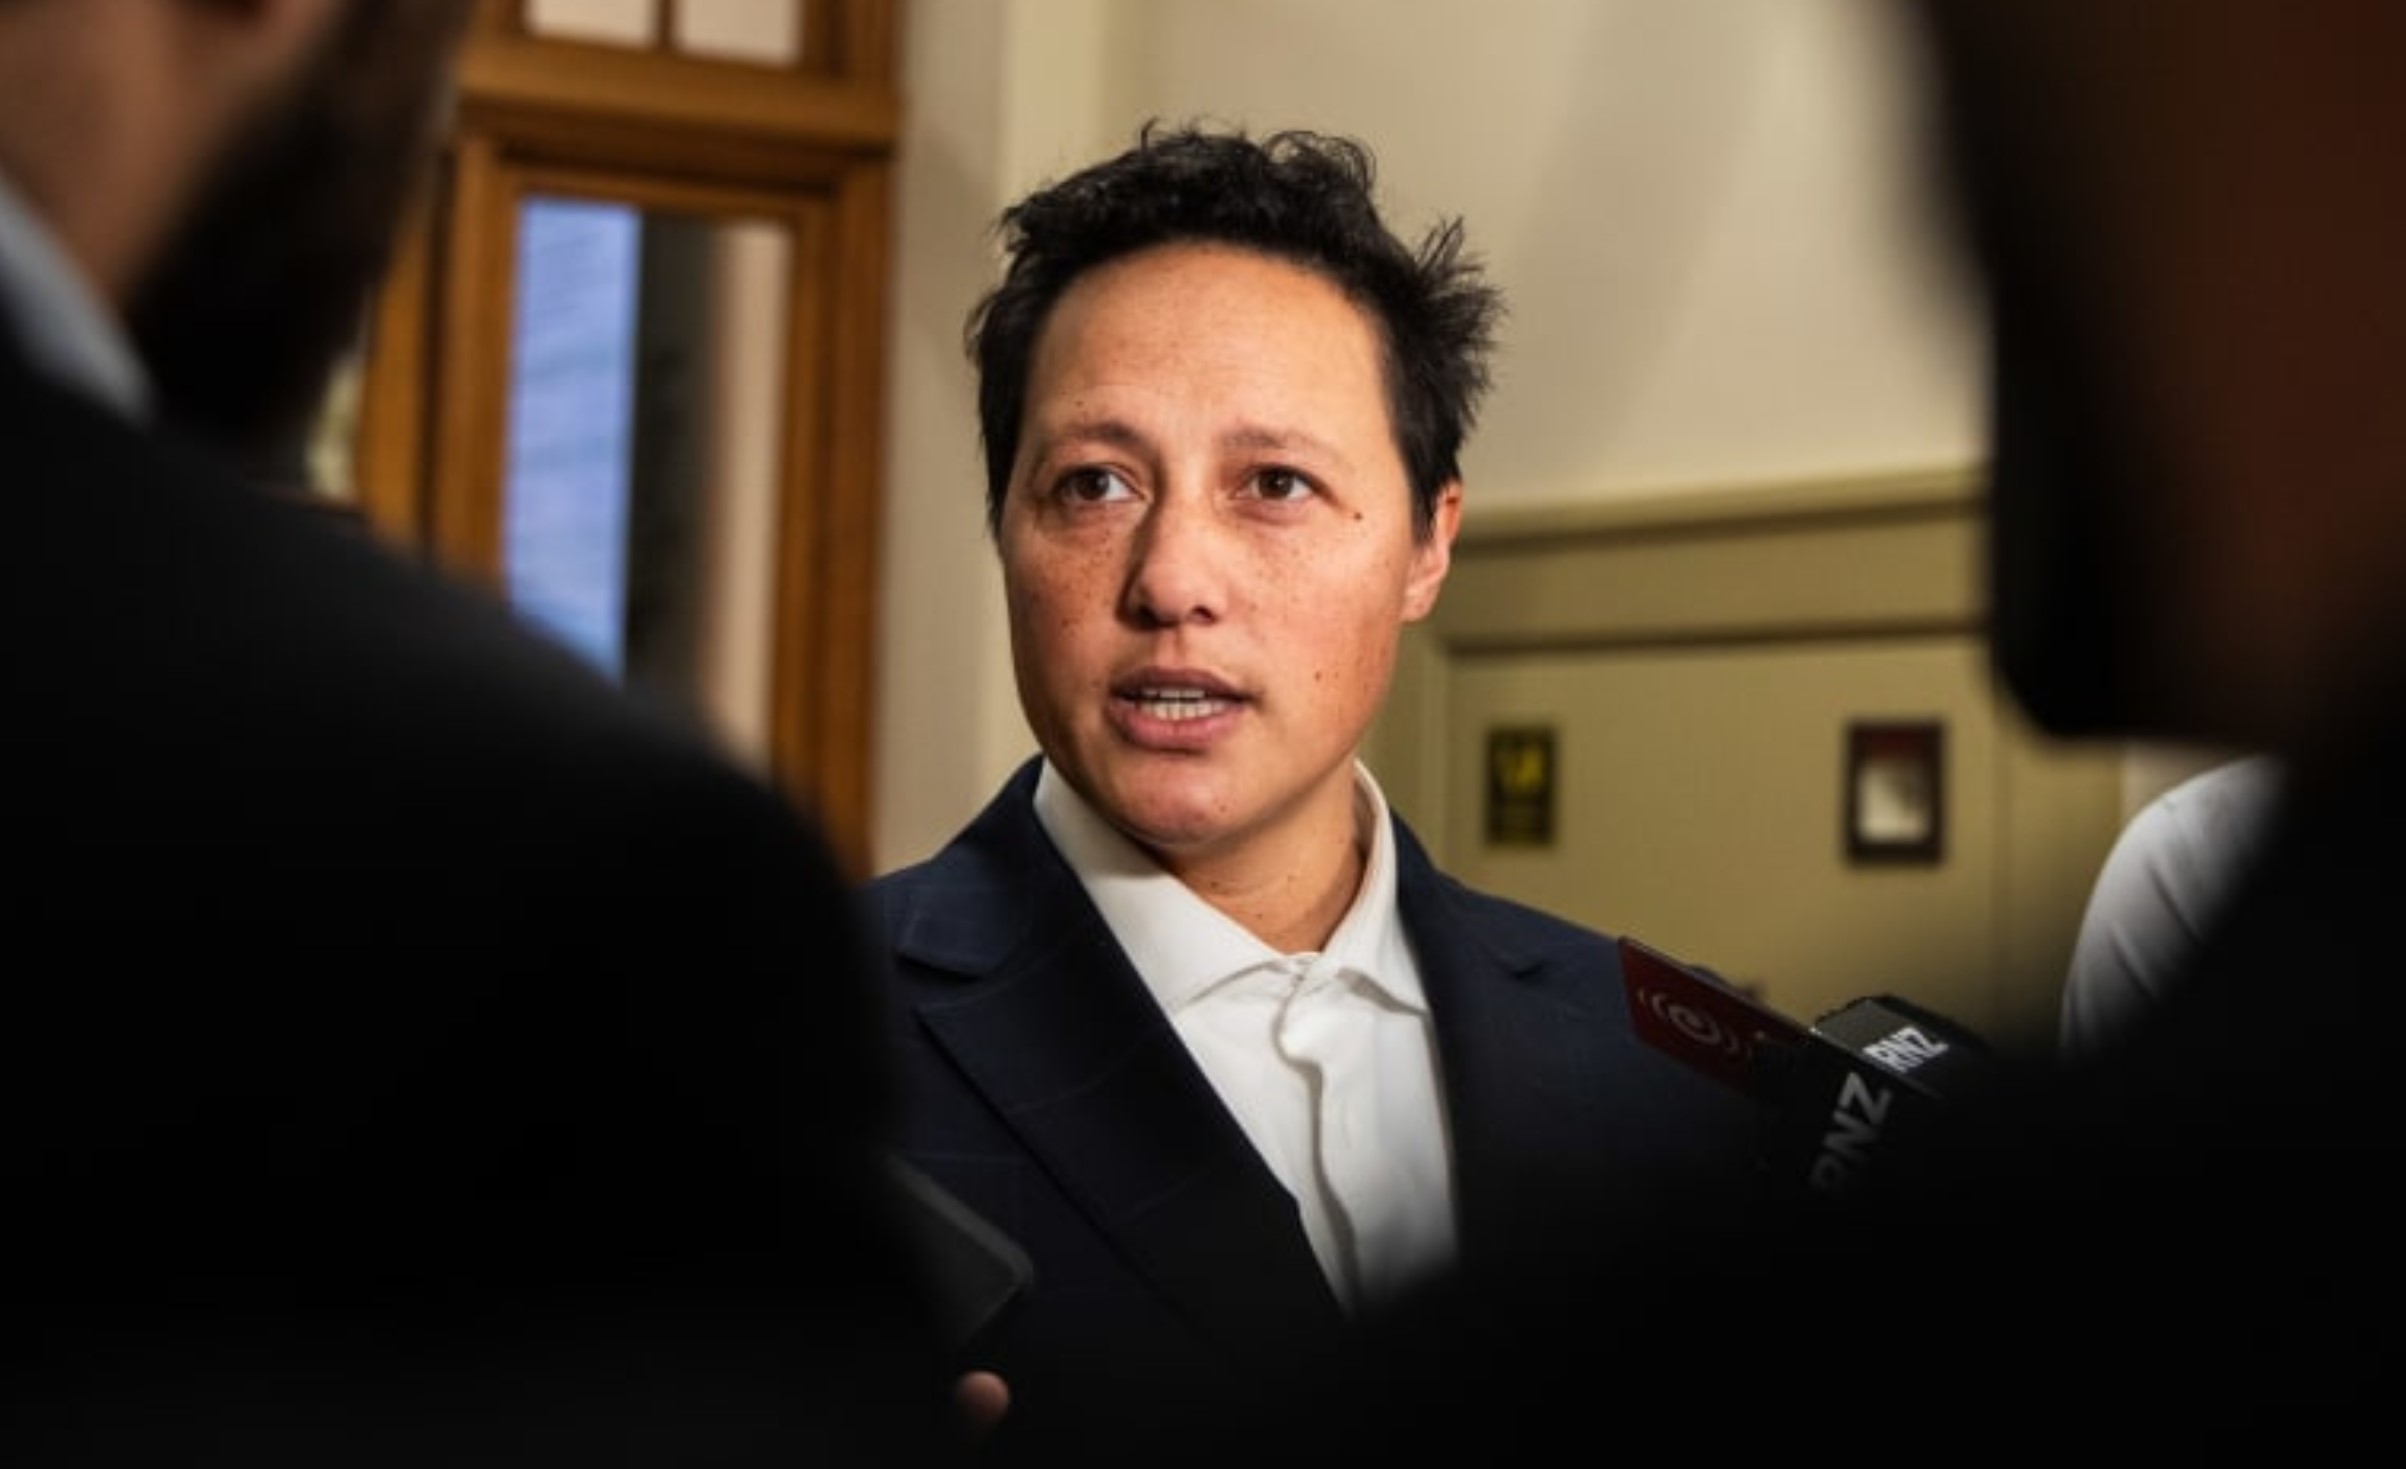 استقالة وزير العدل النيوزيلندي بعد اتهامه بالقيادة المتهورة